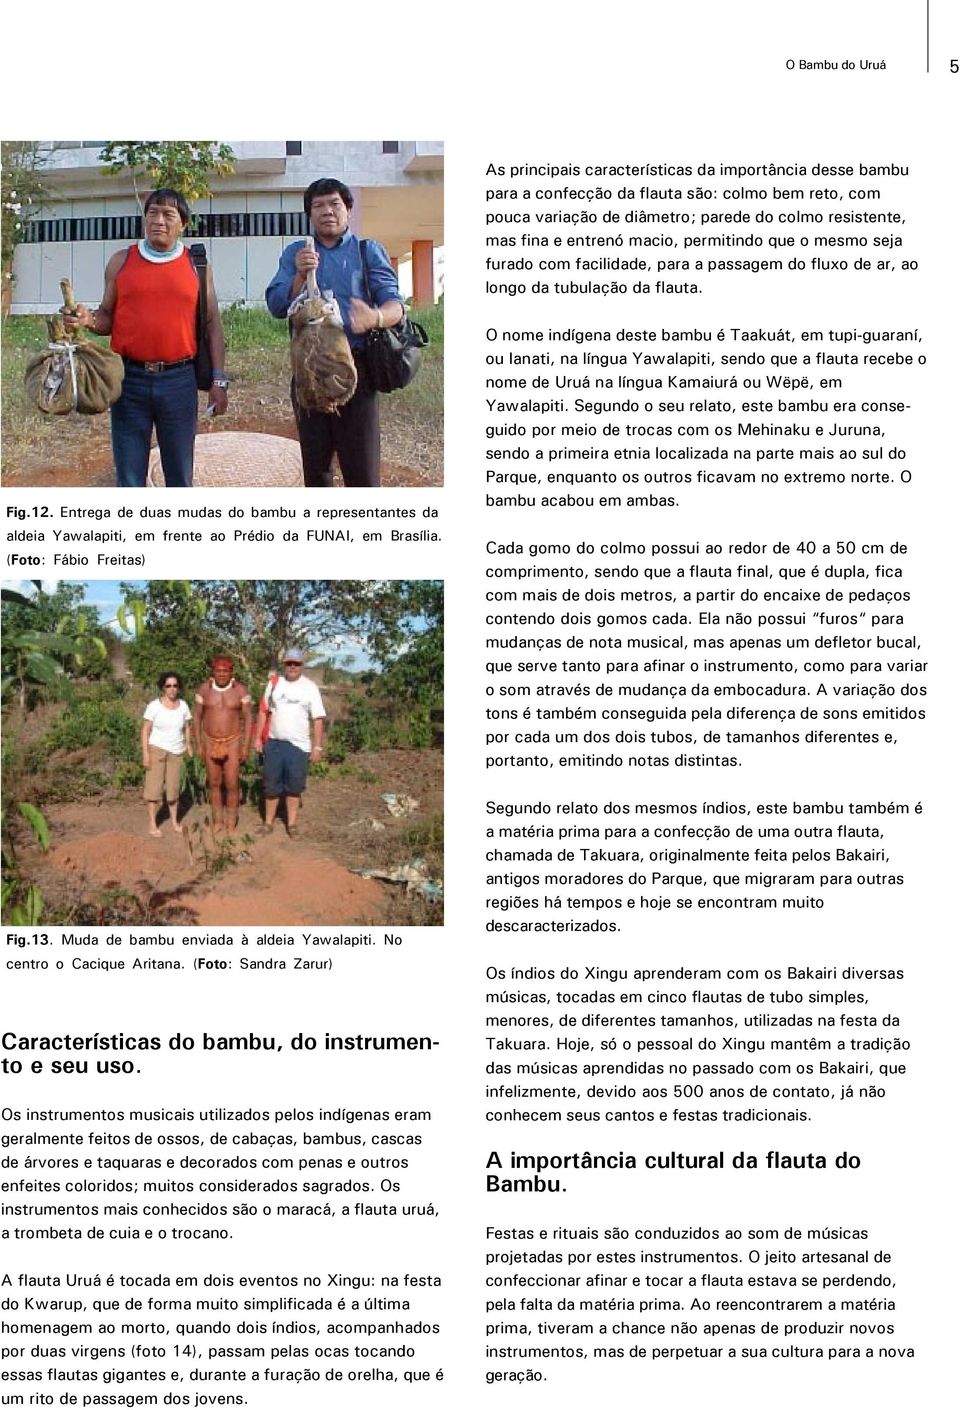 Entrega de duas mudas do bambu a representantes da aldeia Yawalapiti, em frente ao Prédio da FUNAI, em Brasília.